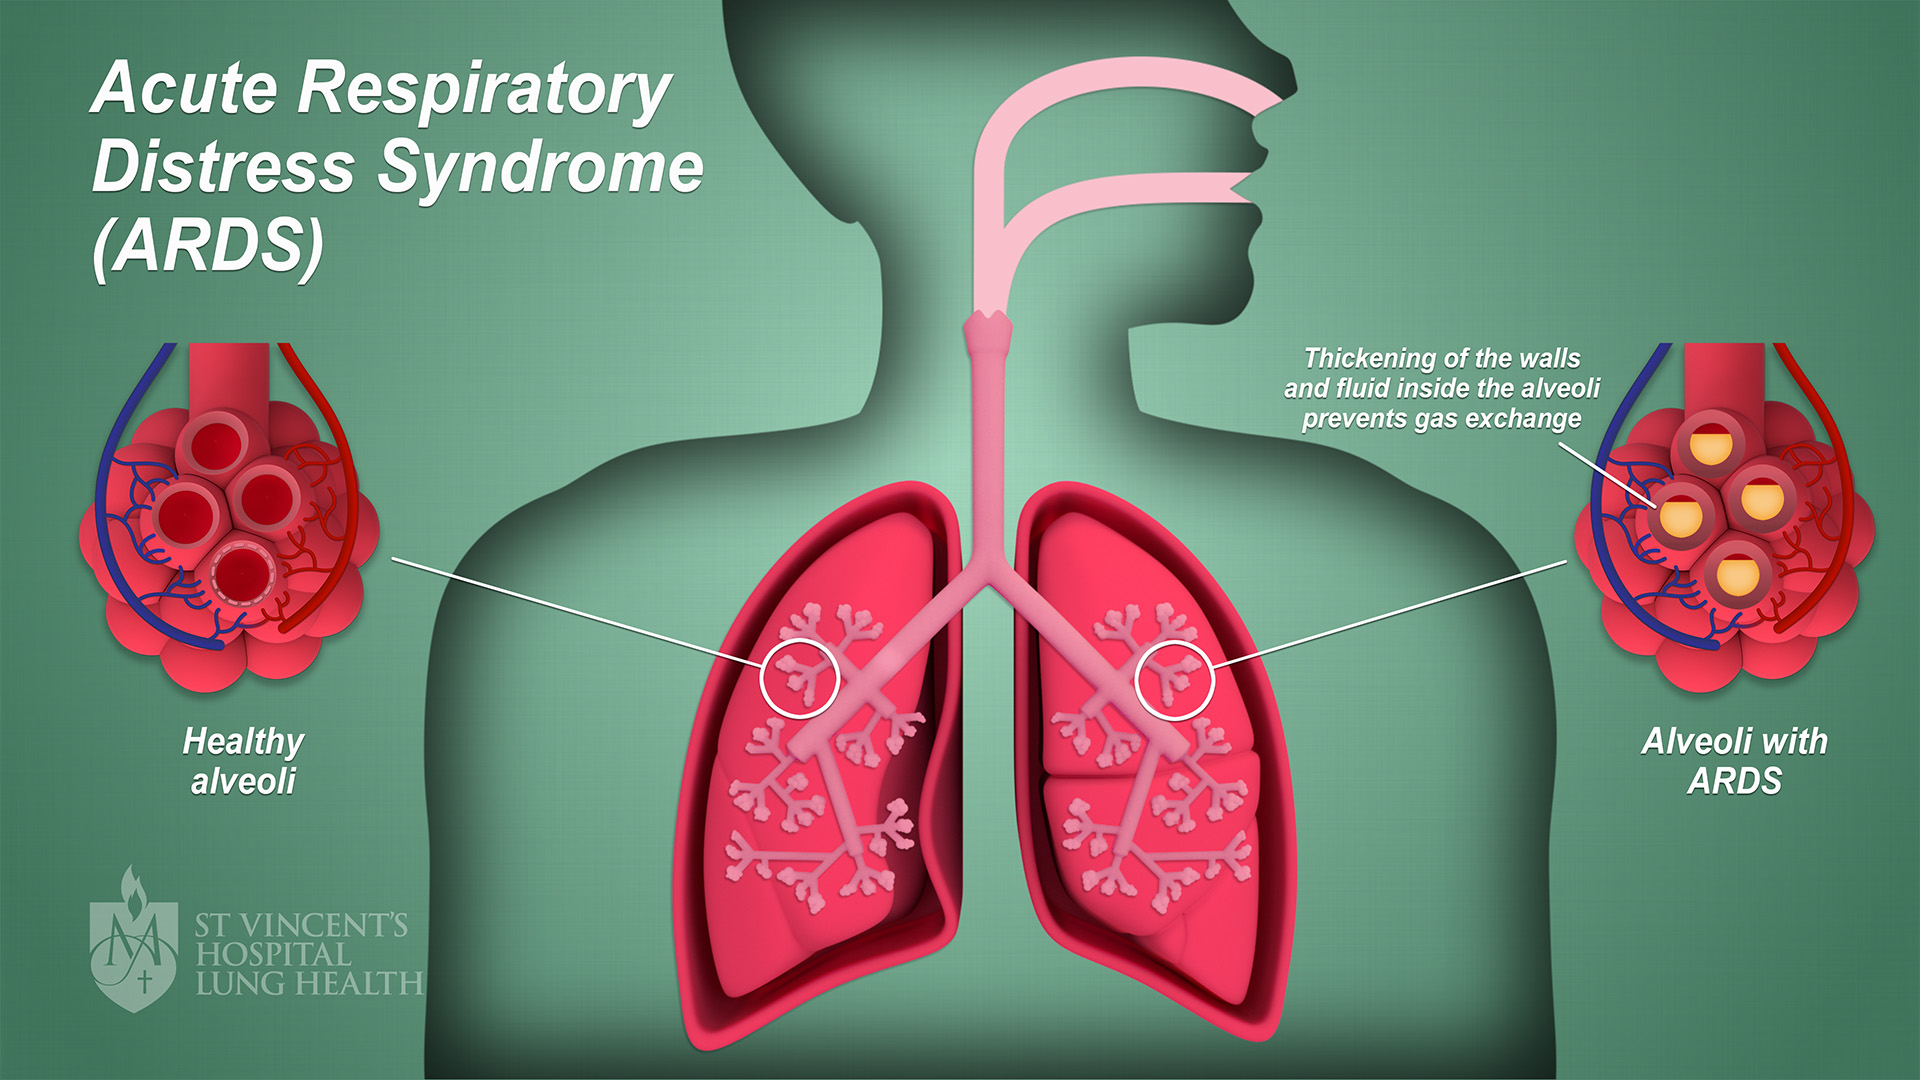 BMJ子刊：肺活检在急性呼吸窘迫综合征诊断中的安全性和可行性分析